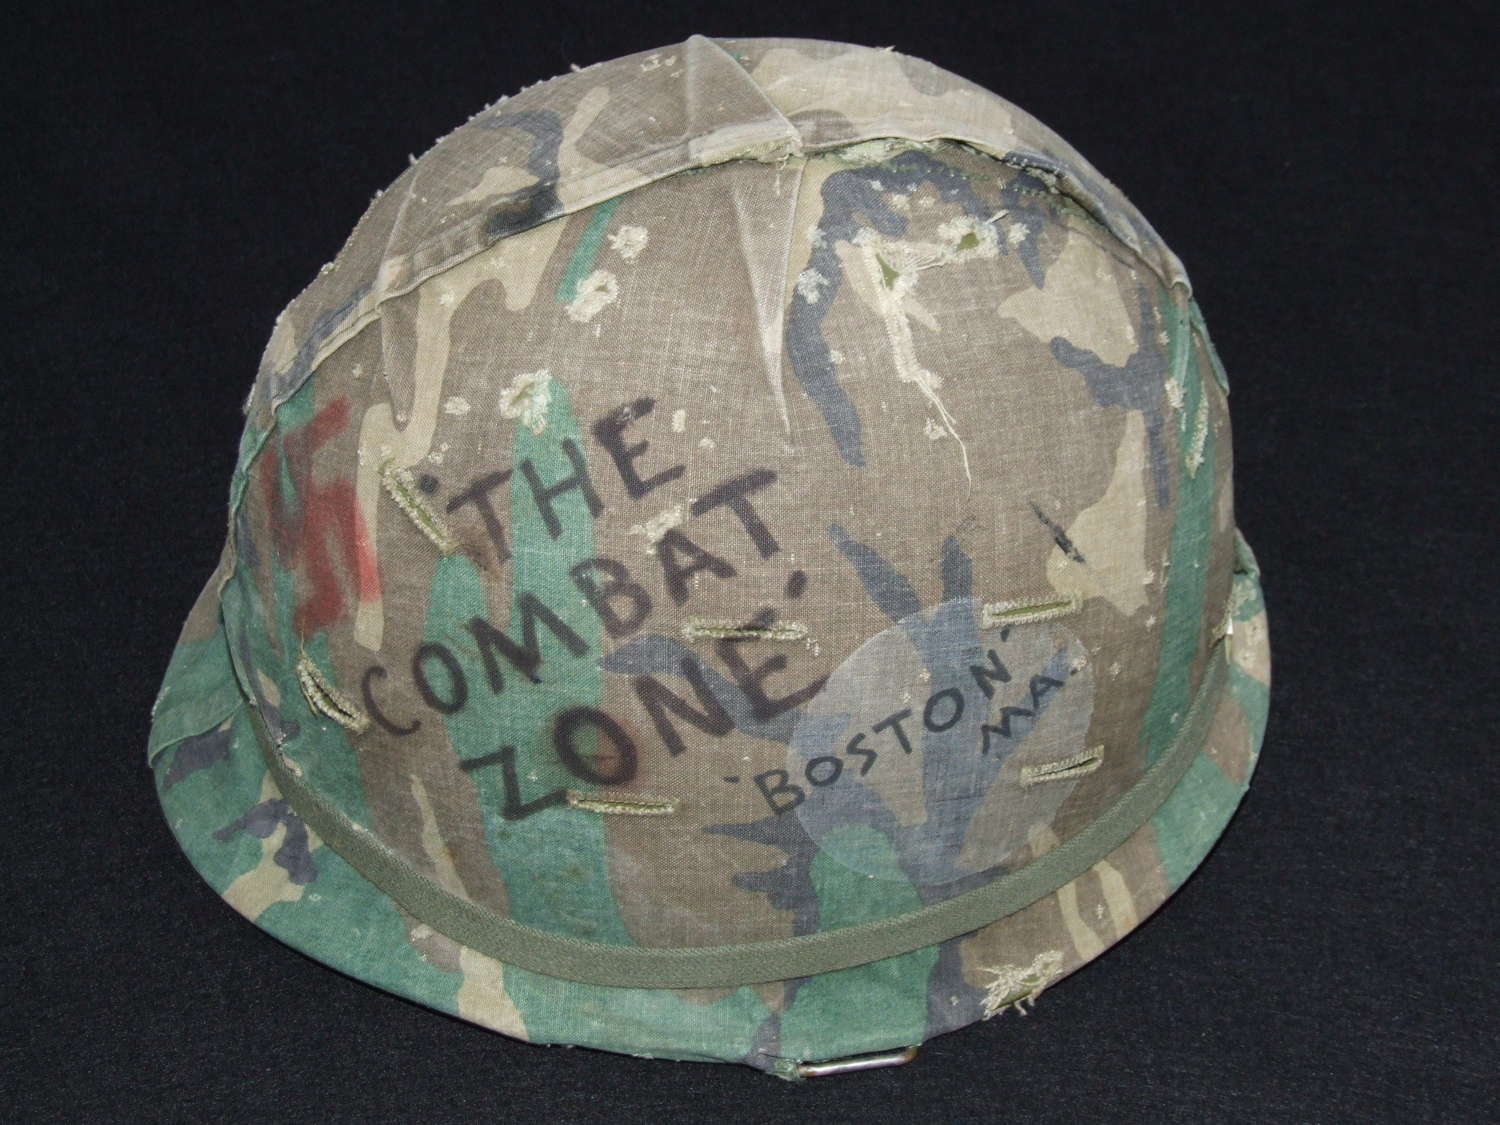 Vietnam Period US Combat Helmet with Artwork